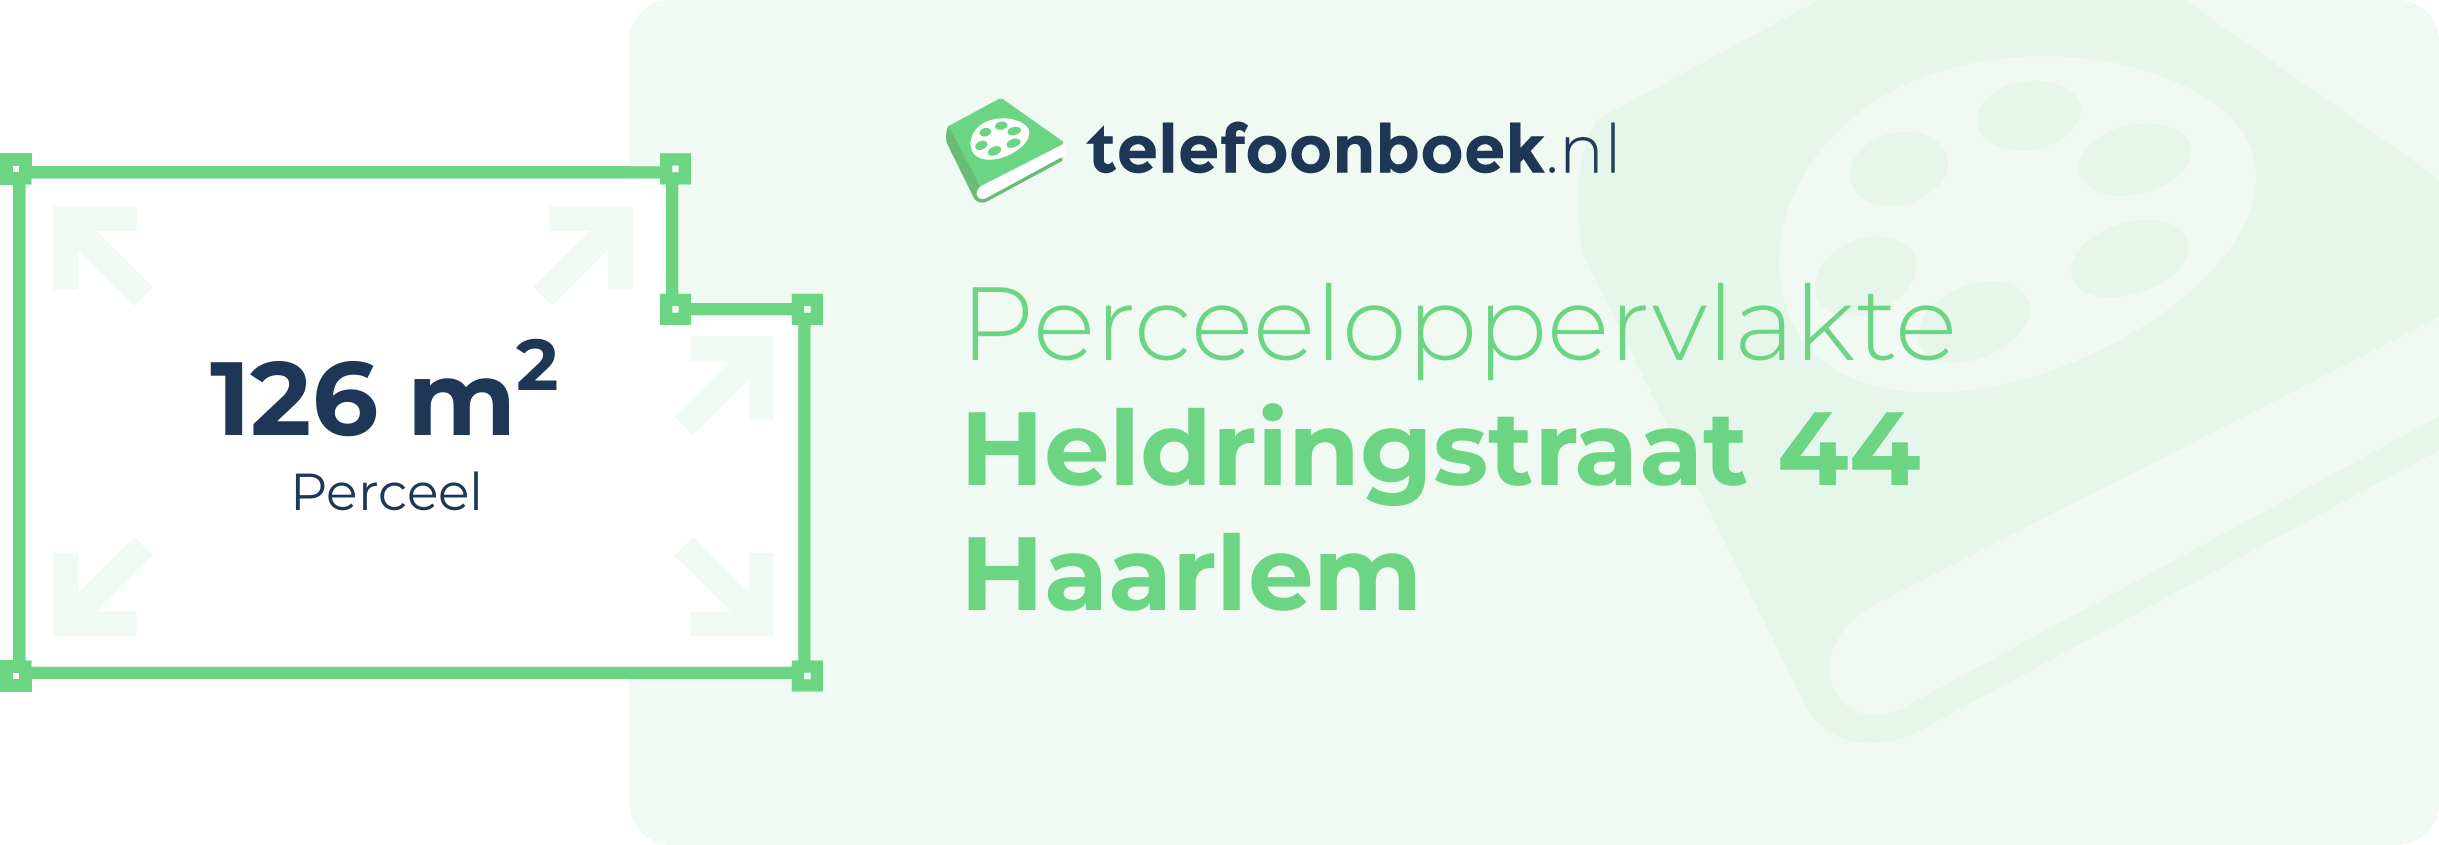 Perceeloppervlakte Heldringstraat 44 Haarlem